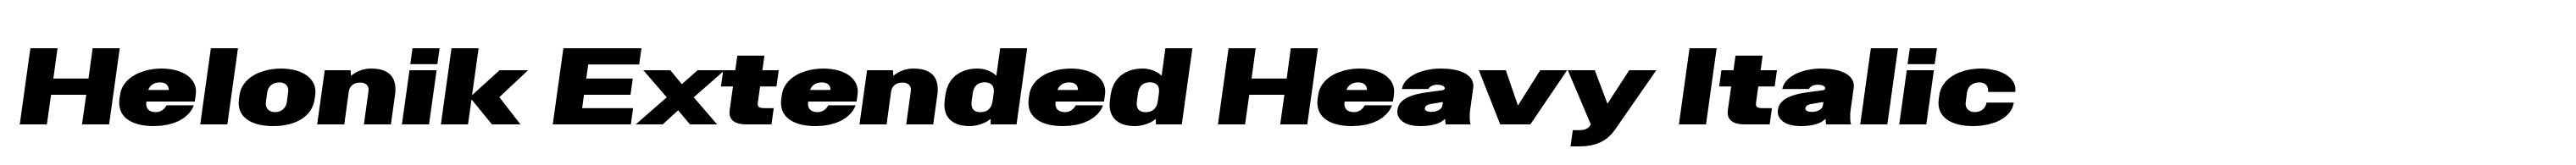 Helonik Extended Heavy Italic